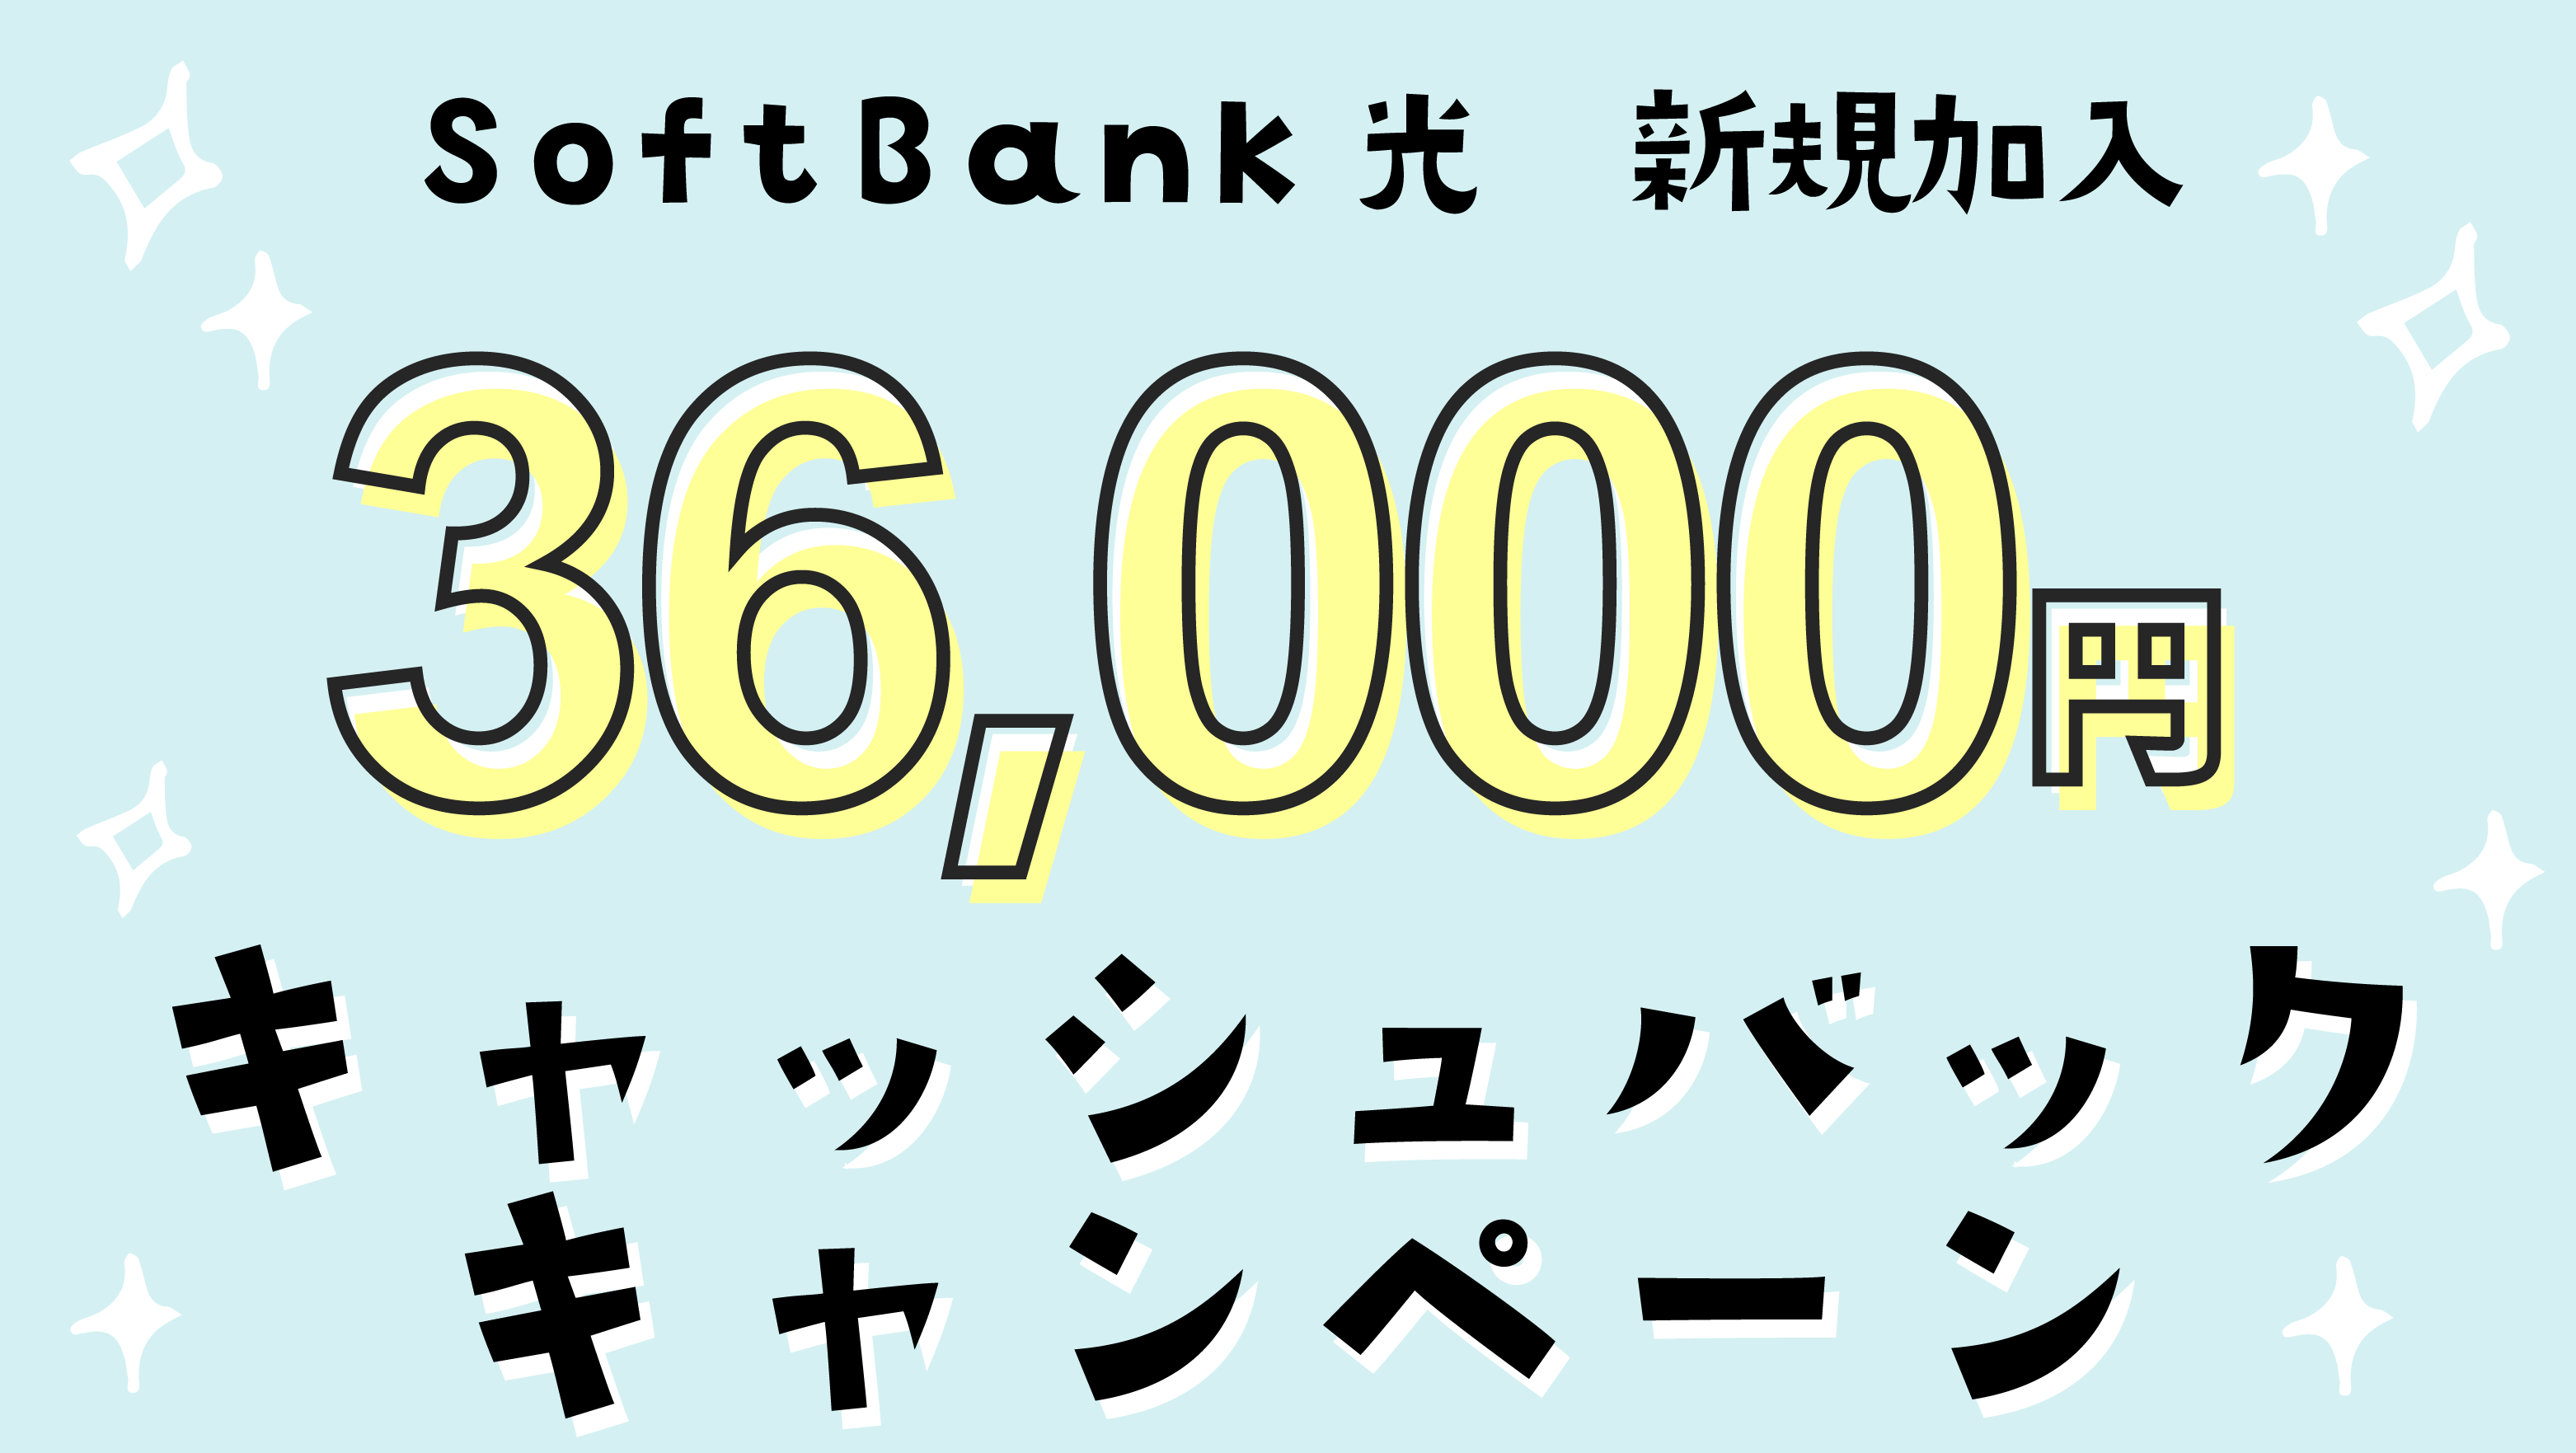 SoftBank 光の新規加入で36,000円キャッシュバック